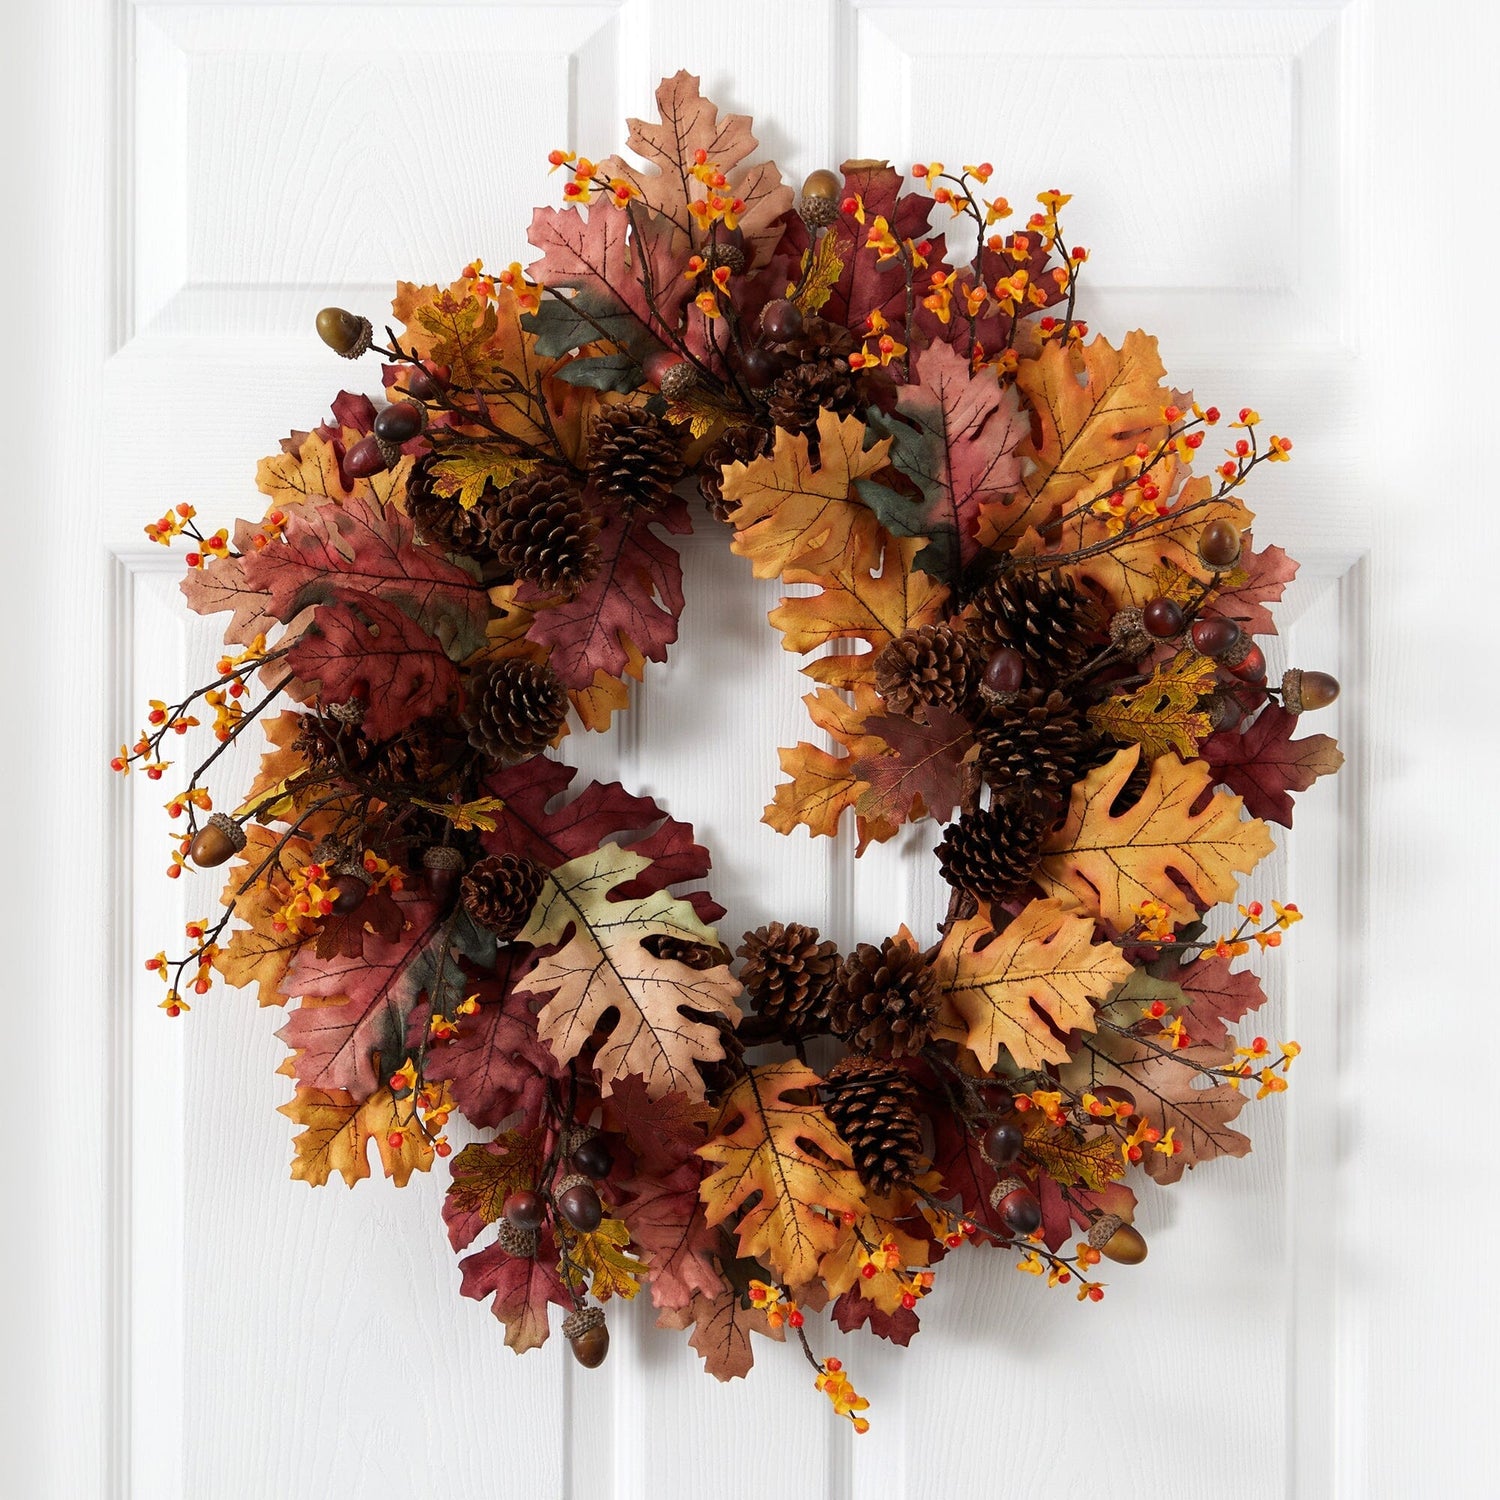 24” Oak Leaf, Acorn & Pine Wreath